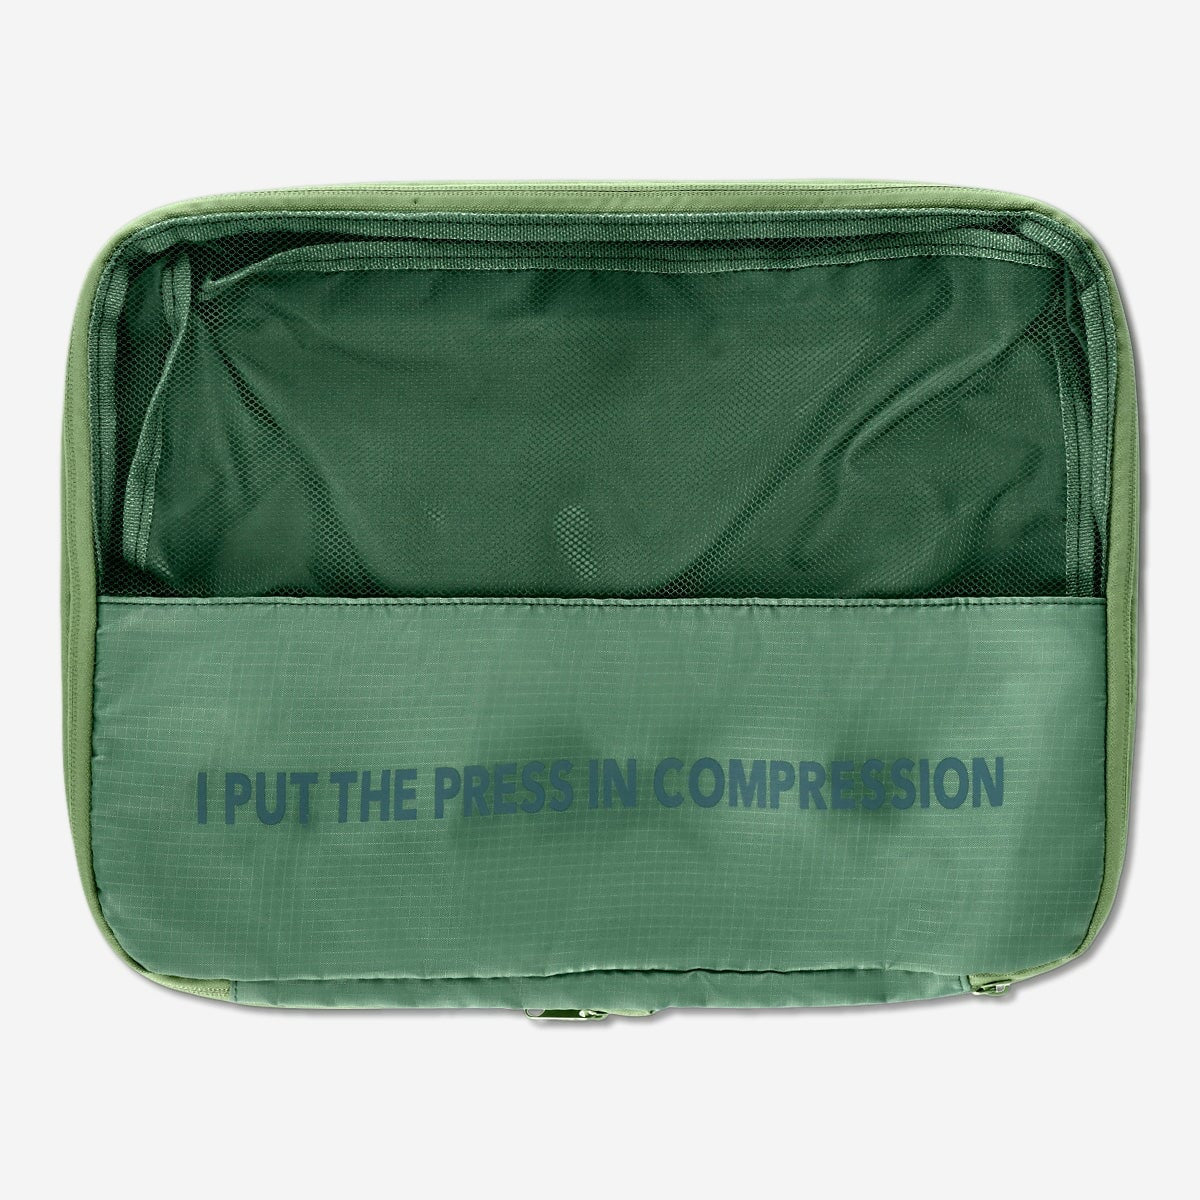 Questo ti sorprenderà‼️ Una borsa da viaggio con sistema di compressio